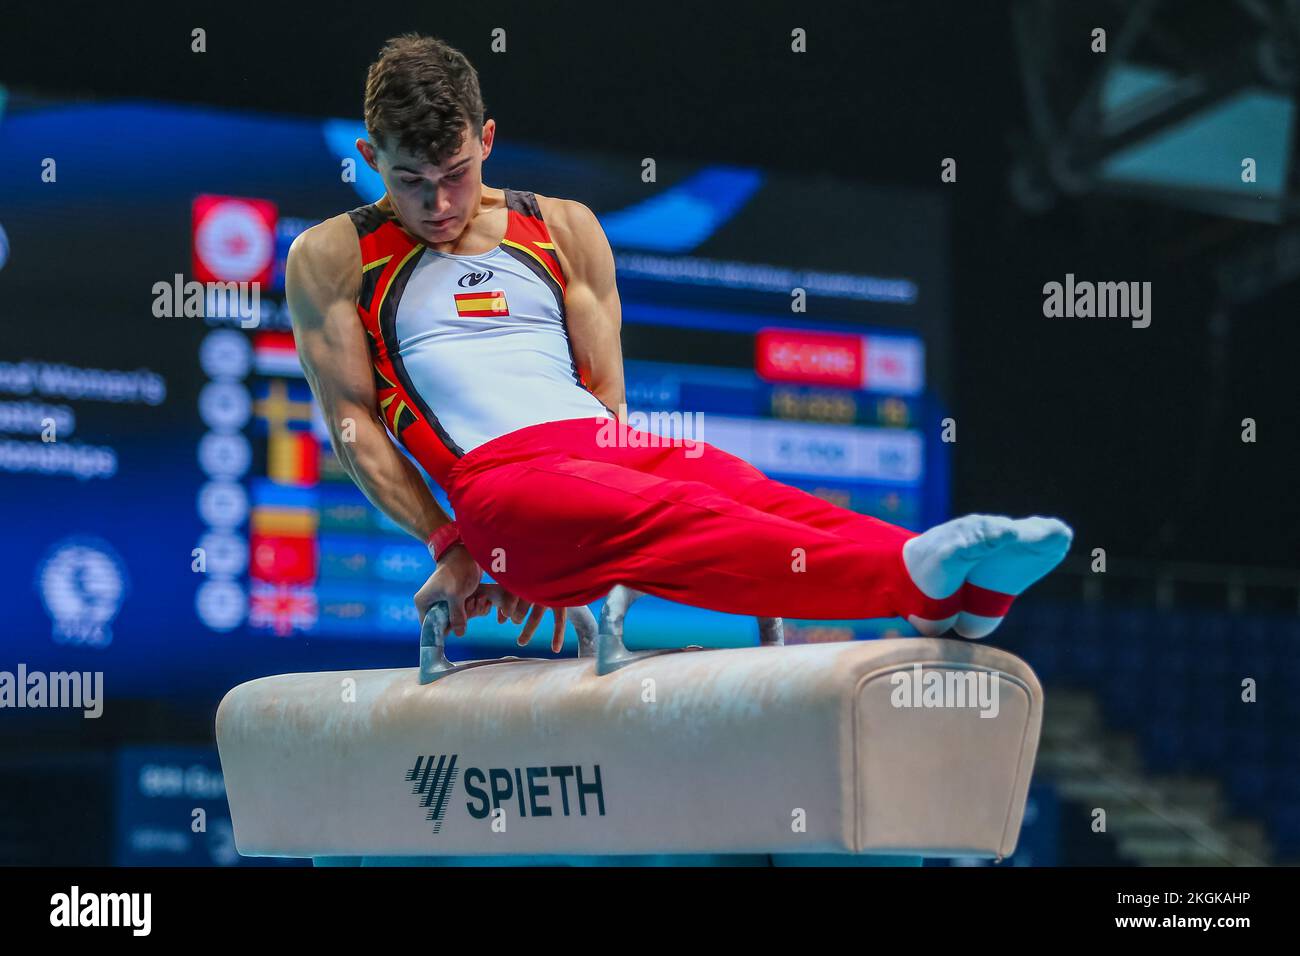 Szczecin, Pologne, 10 avril 2019: L'athlète olympique masculin Mir Nicolau d'Espagne participe au championnat de gymnastique artistique sur le cheval de Pommel Banque D'Images